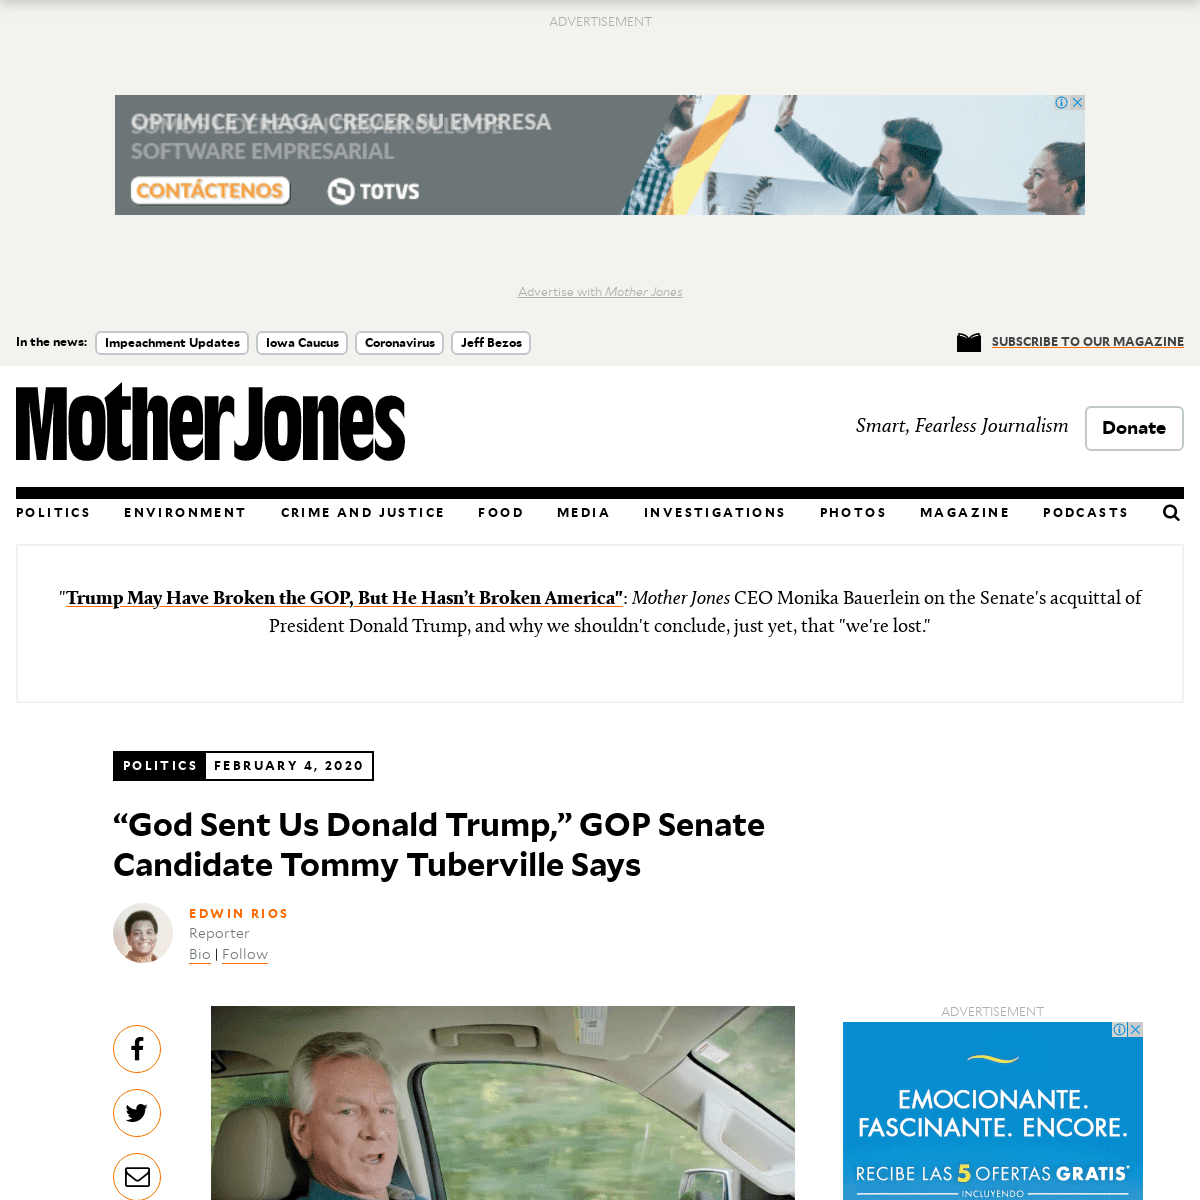 A complete backup of www.motherjones.com/2020-elections/2020/02/god-sent-us-donald-trump-republican-senate-candidate-says/